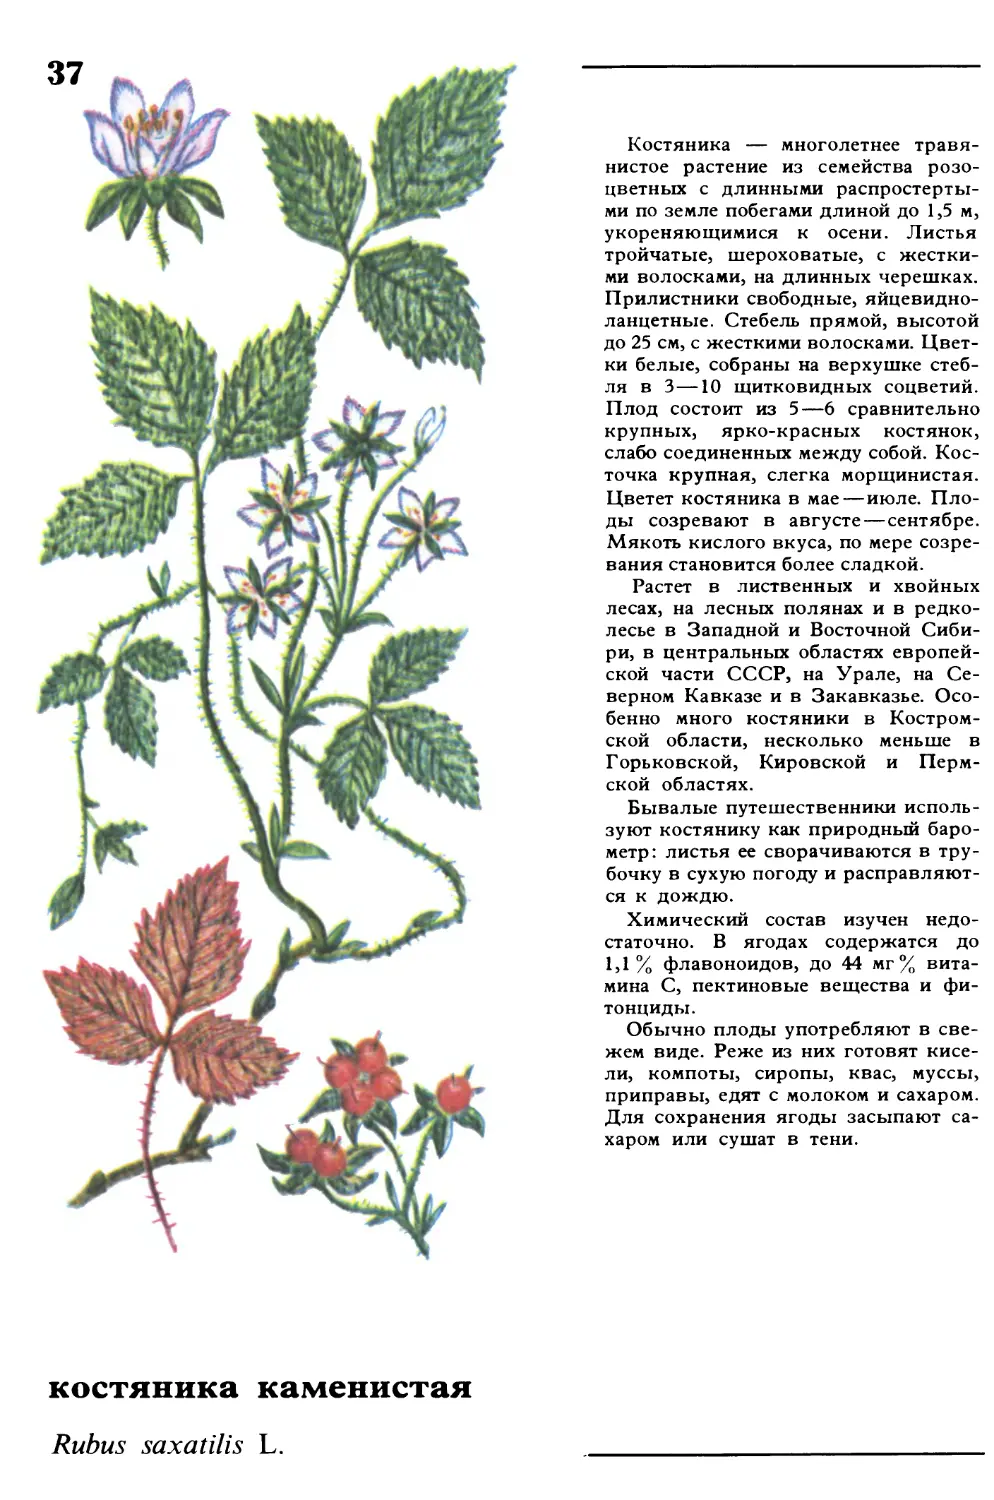 Костяника
костяника каменистая
Rubus saxatilis L.